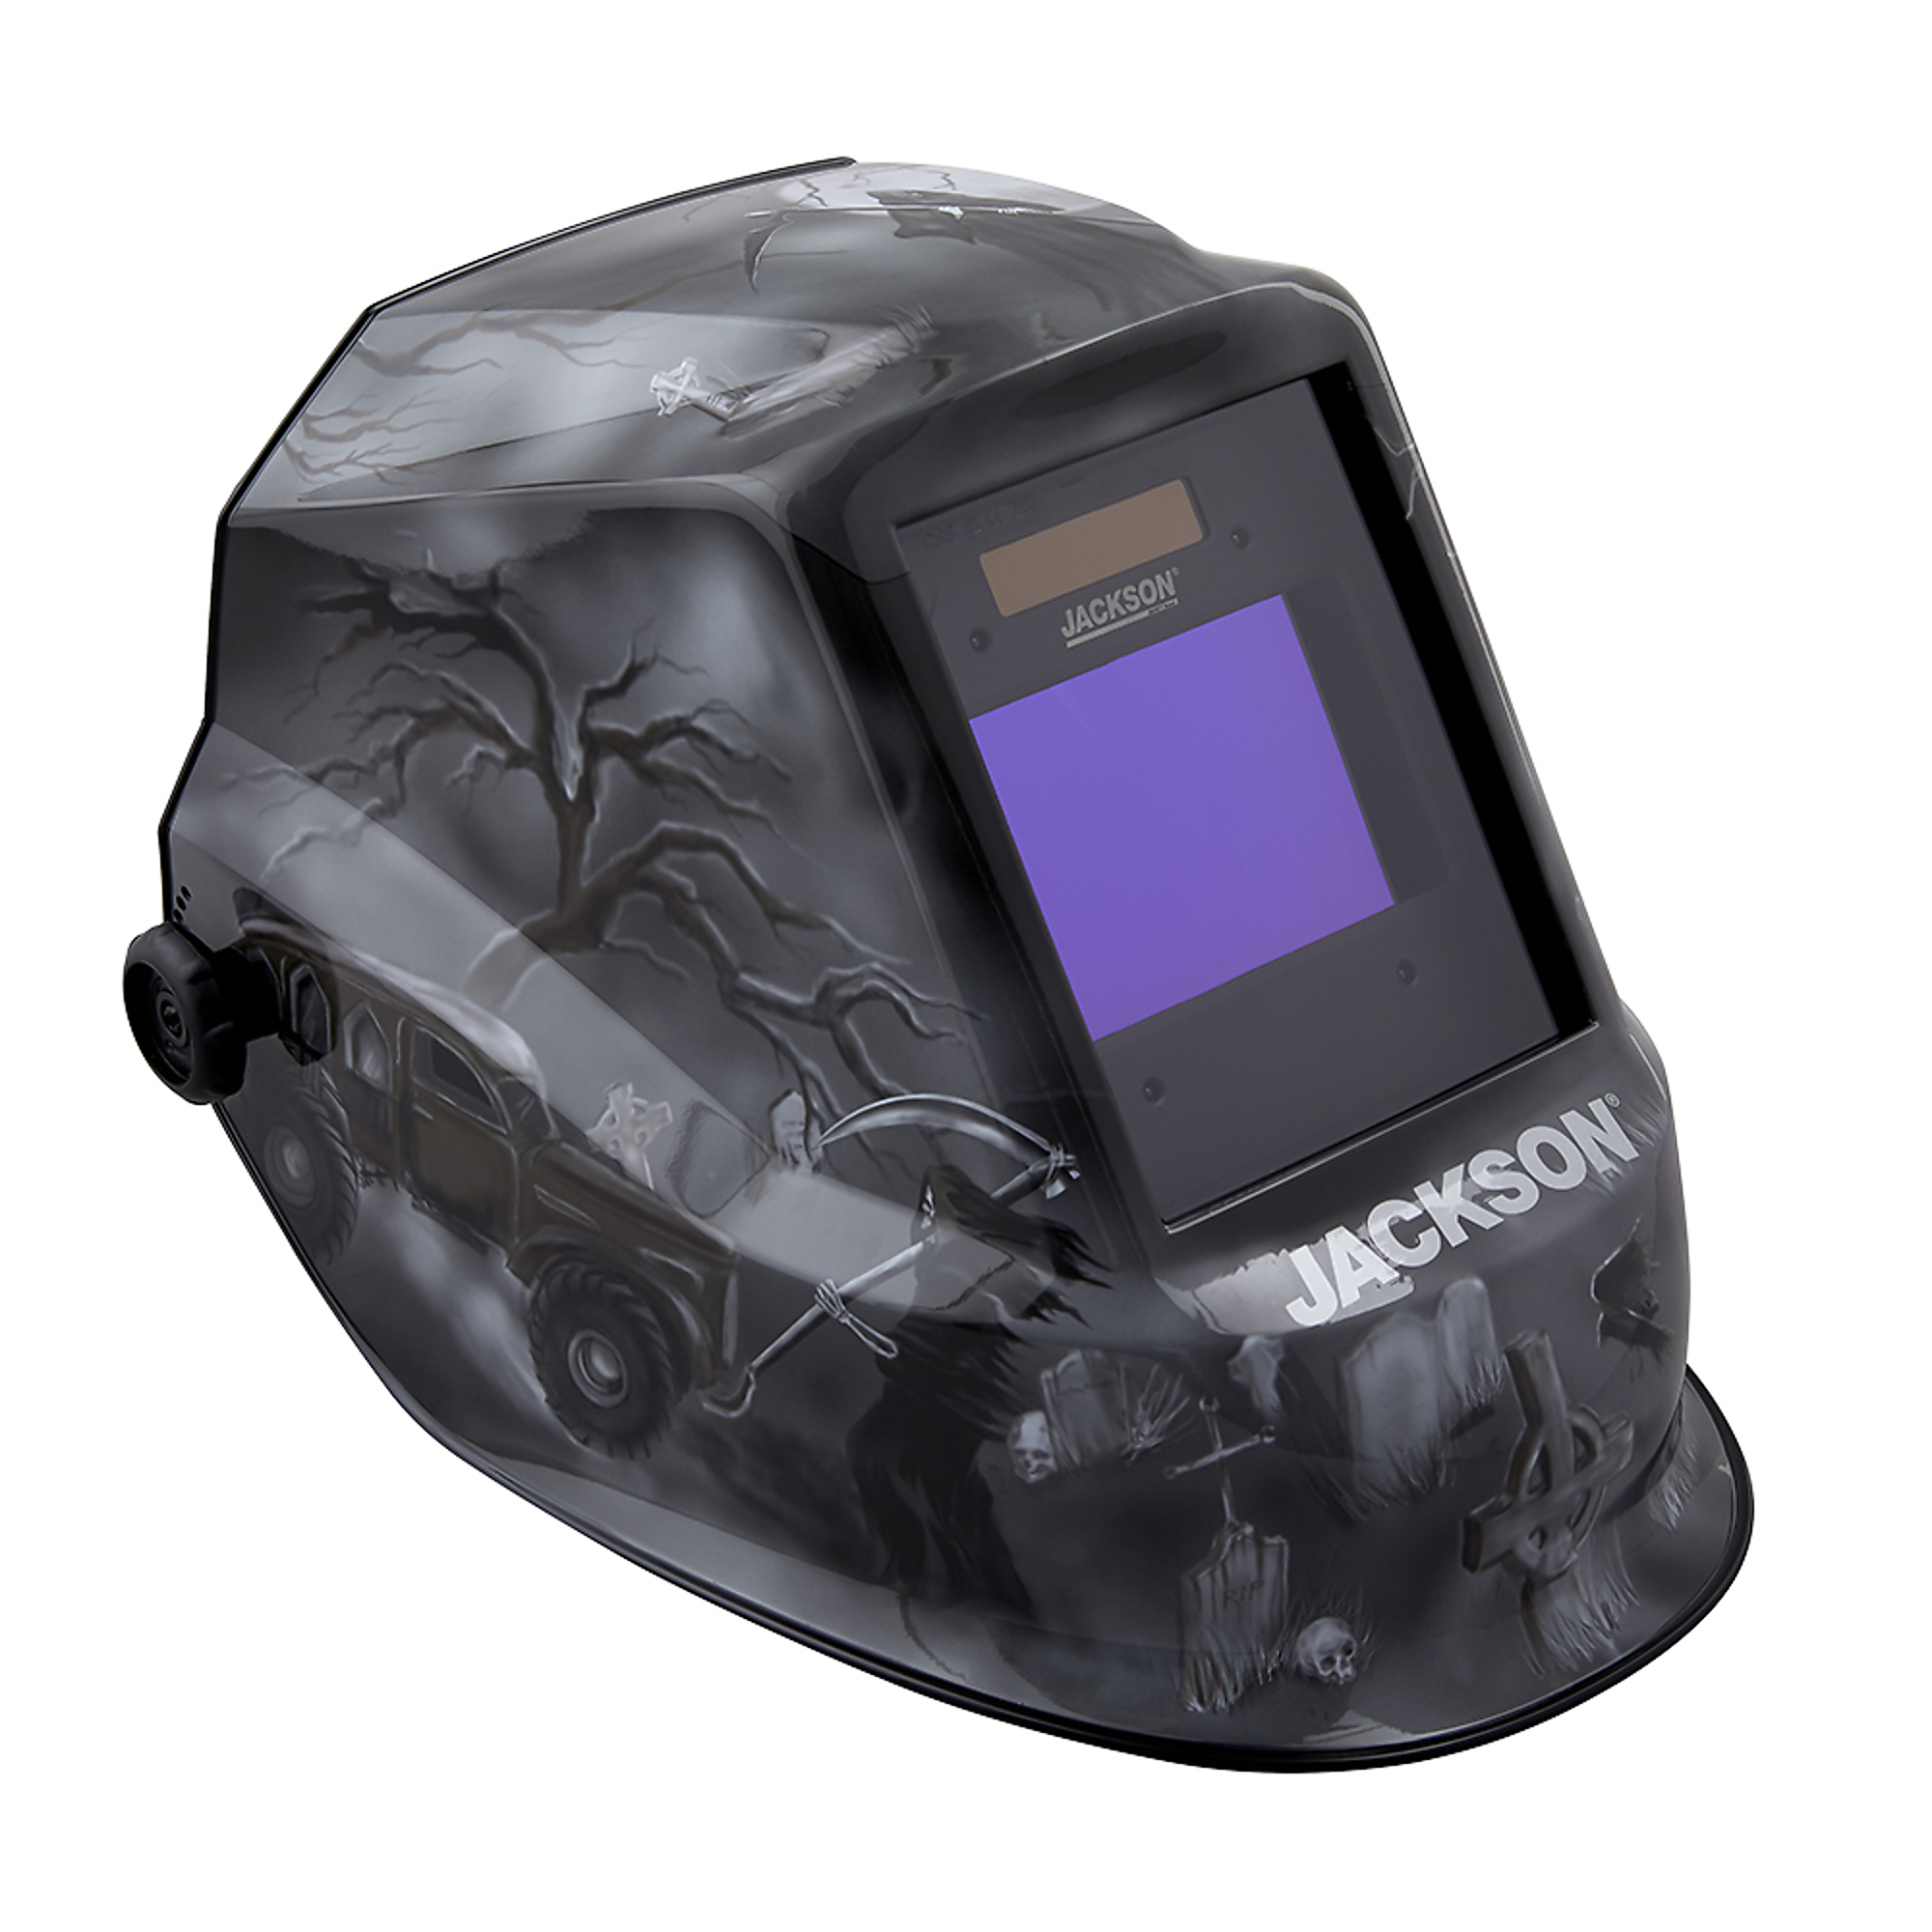 Jackson Safety, 6ft. Under Graphic Premium ADF Welding Helmet, Auto Darkening, Switch Time 1/25,000 sec., Grind Mode, Model 47100